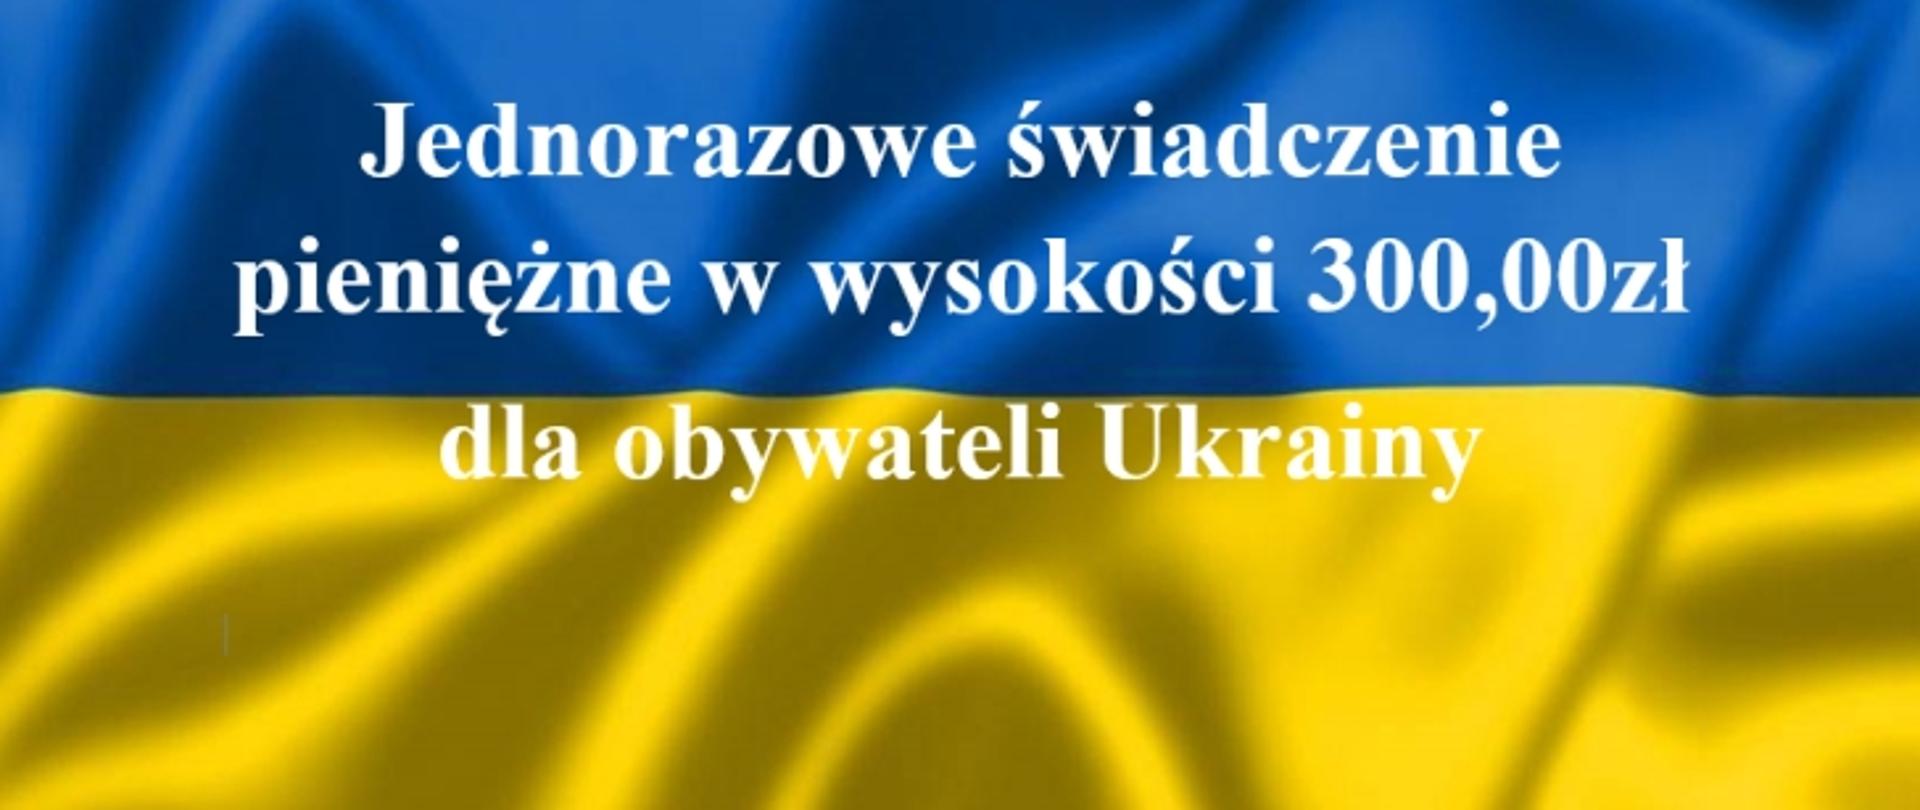 Flaga ukraińska niebiesko żółta z białym napisem "Jednorazowe świadczenie pieniężne w wysokości 300,00zł dla obywateli Ukrainy"
